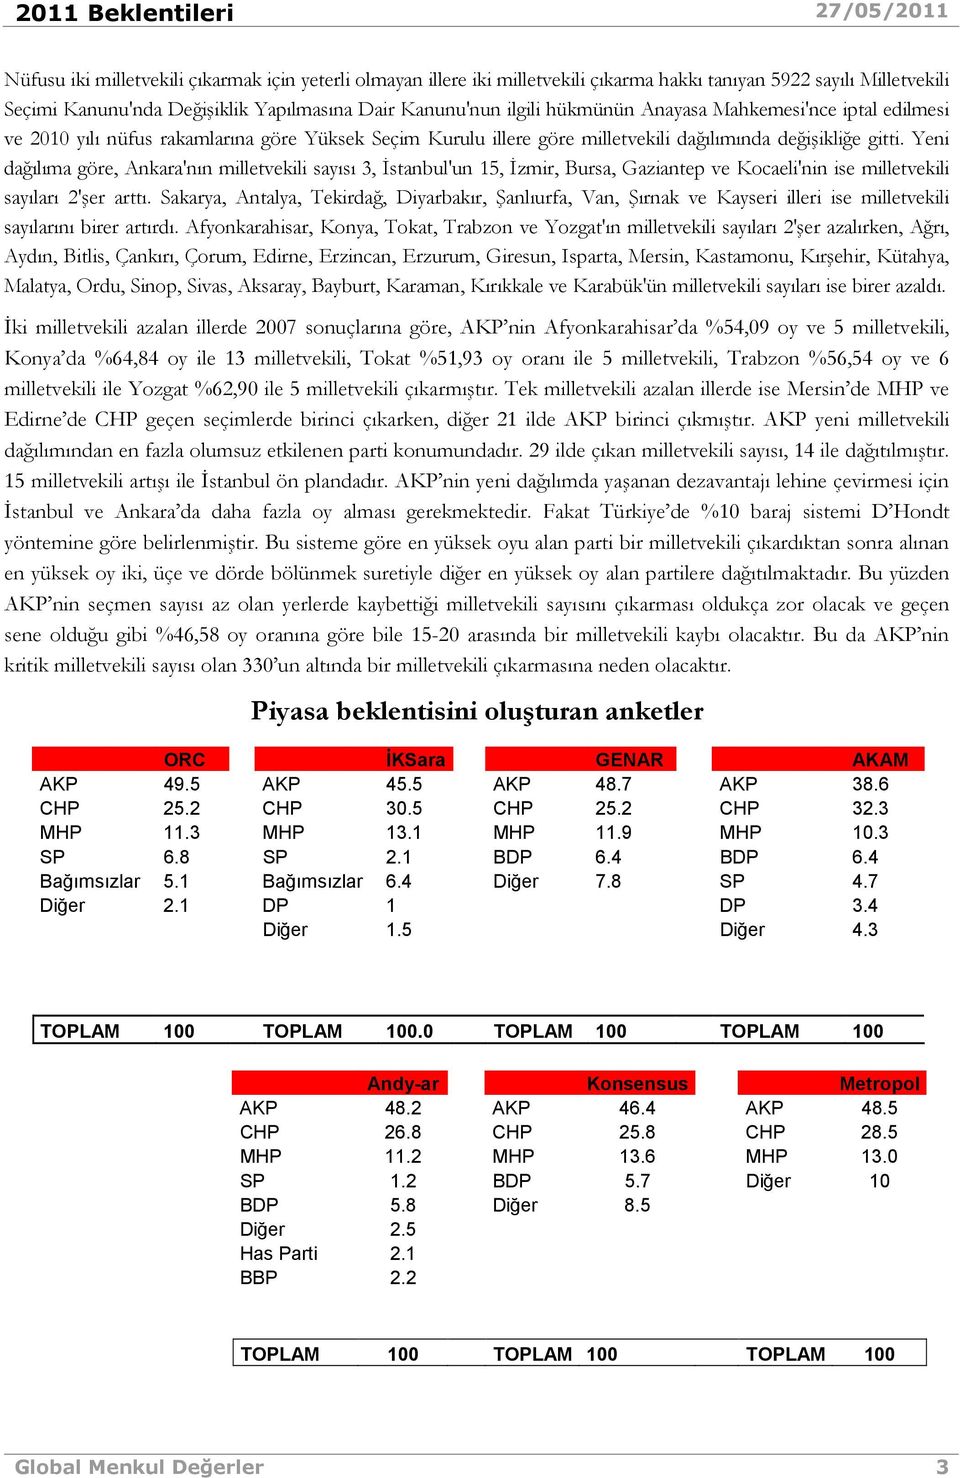 Yeni dağılıma göre, Ankara'nın milletvekili sayısı 3, Đstanbul'un 15, Đzmir, Bursa, Gaziantep ve Kocaeli'nin ise milletvekili sayıları 2'şer arttı.